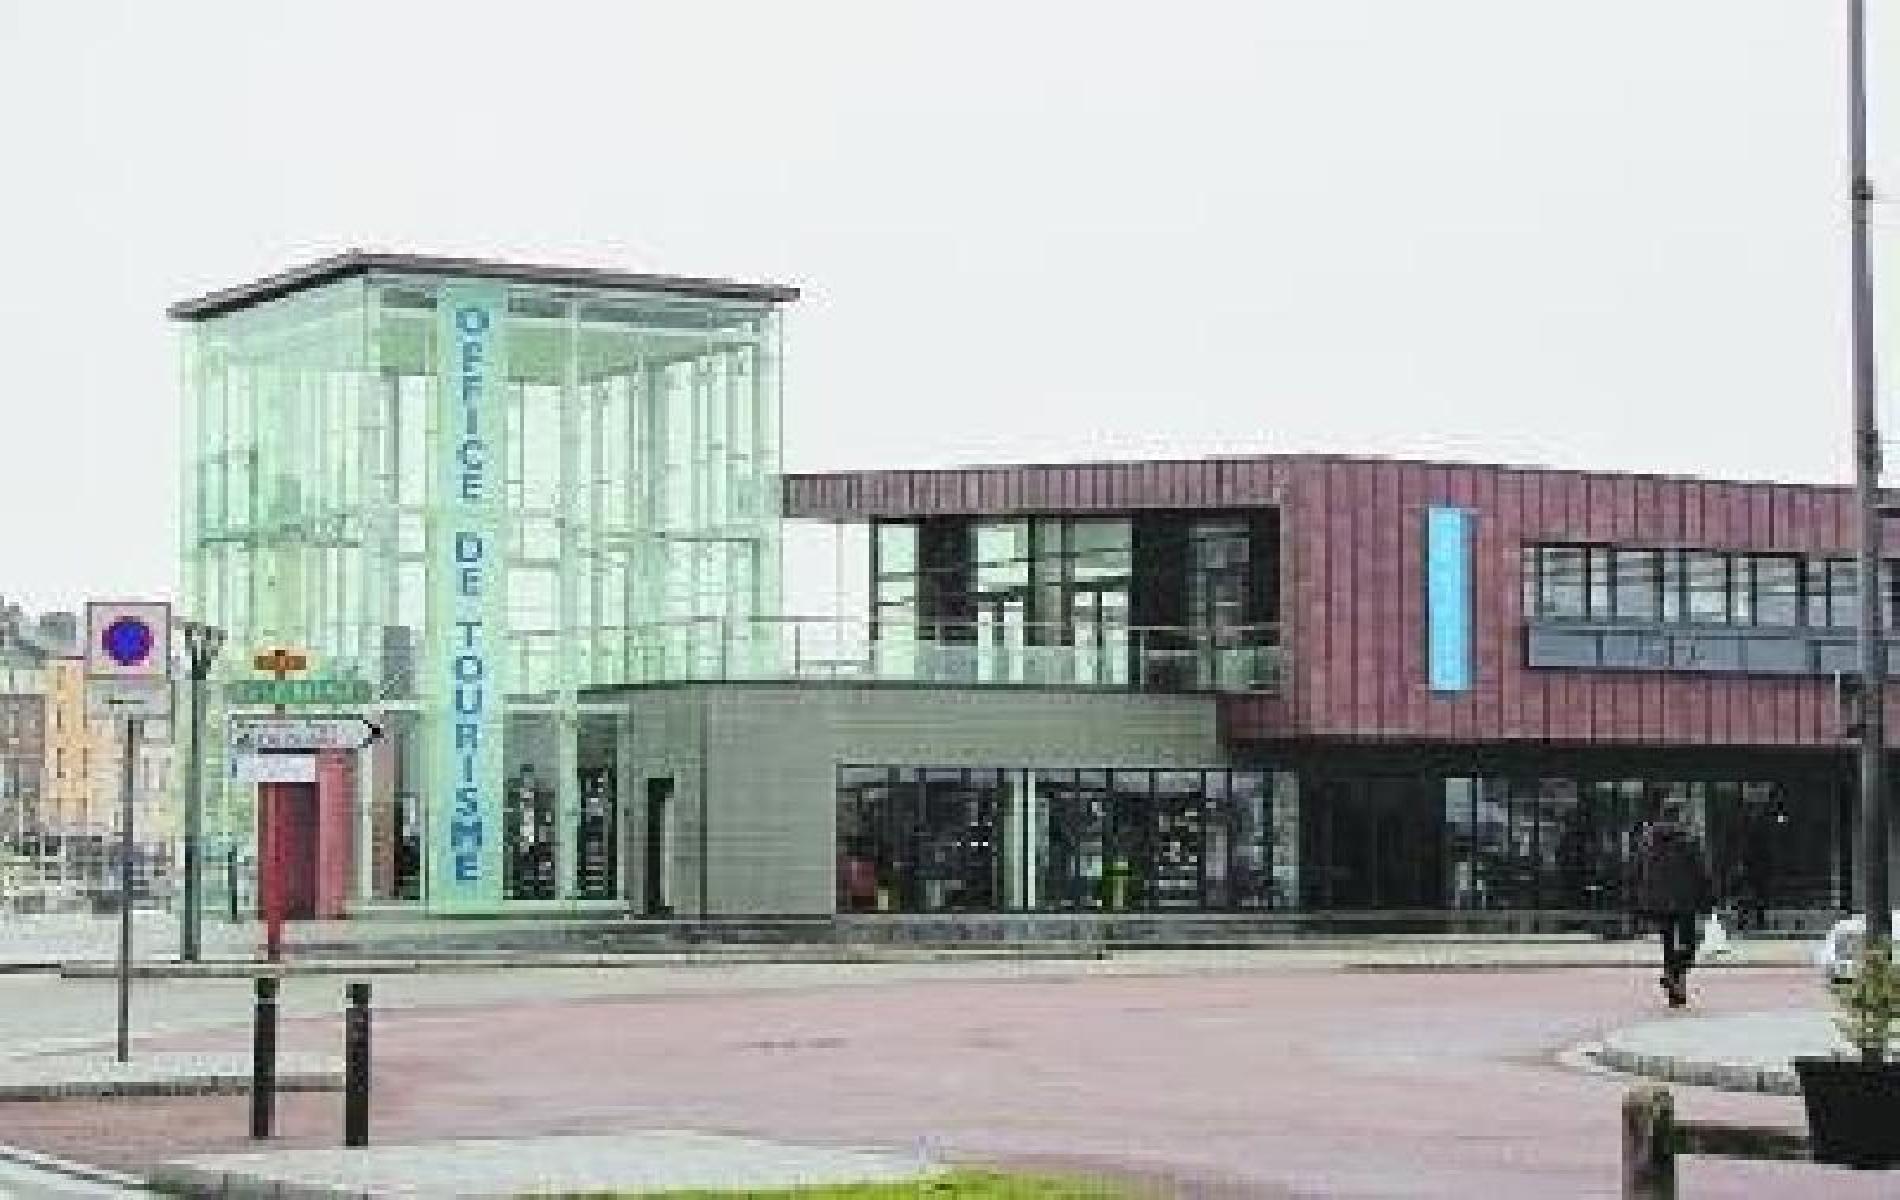 Dieppe Tourist Office